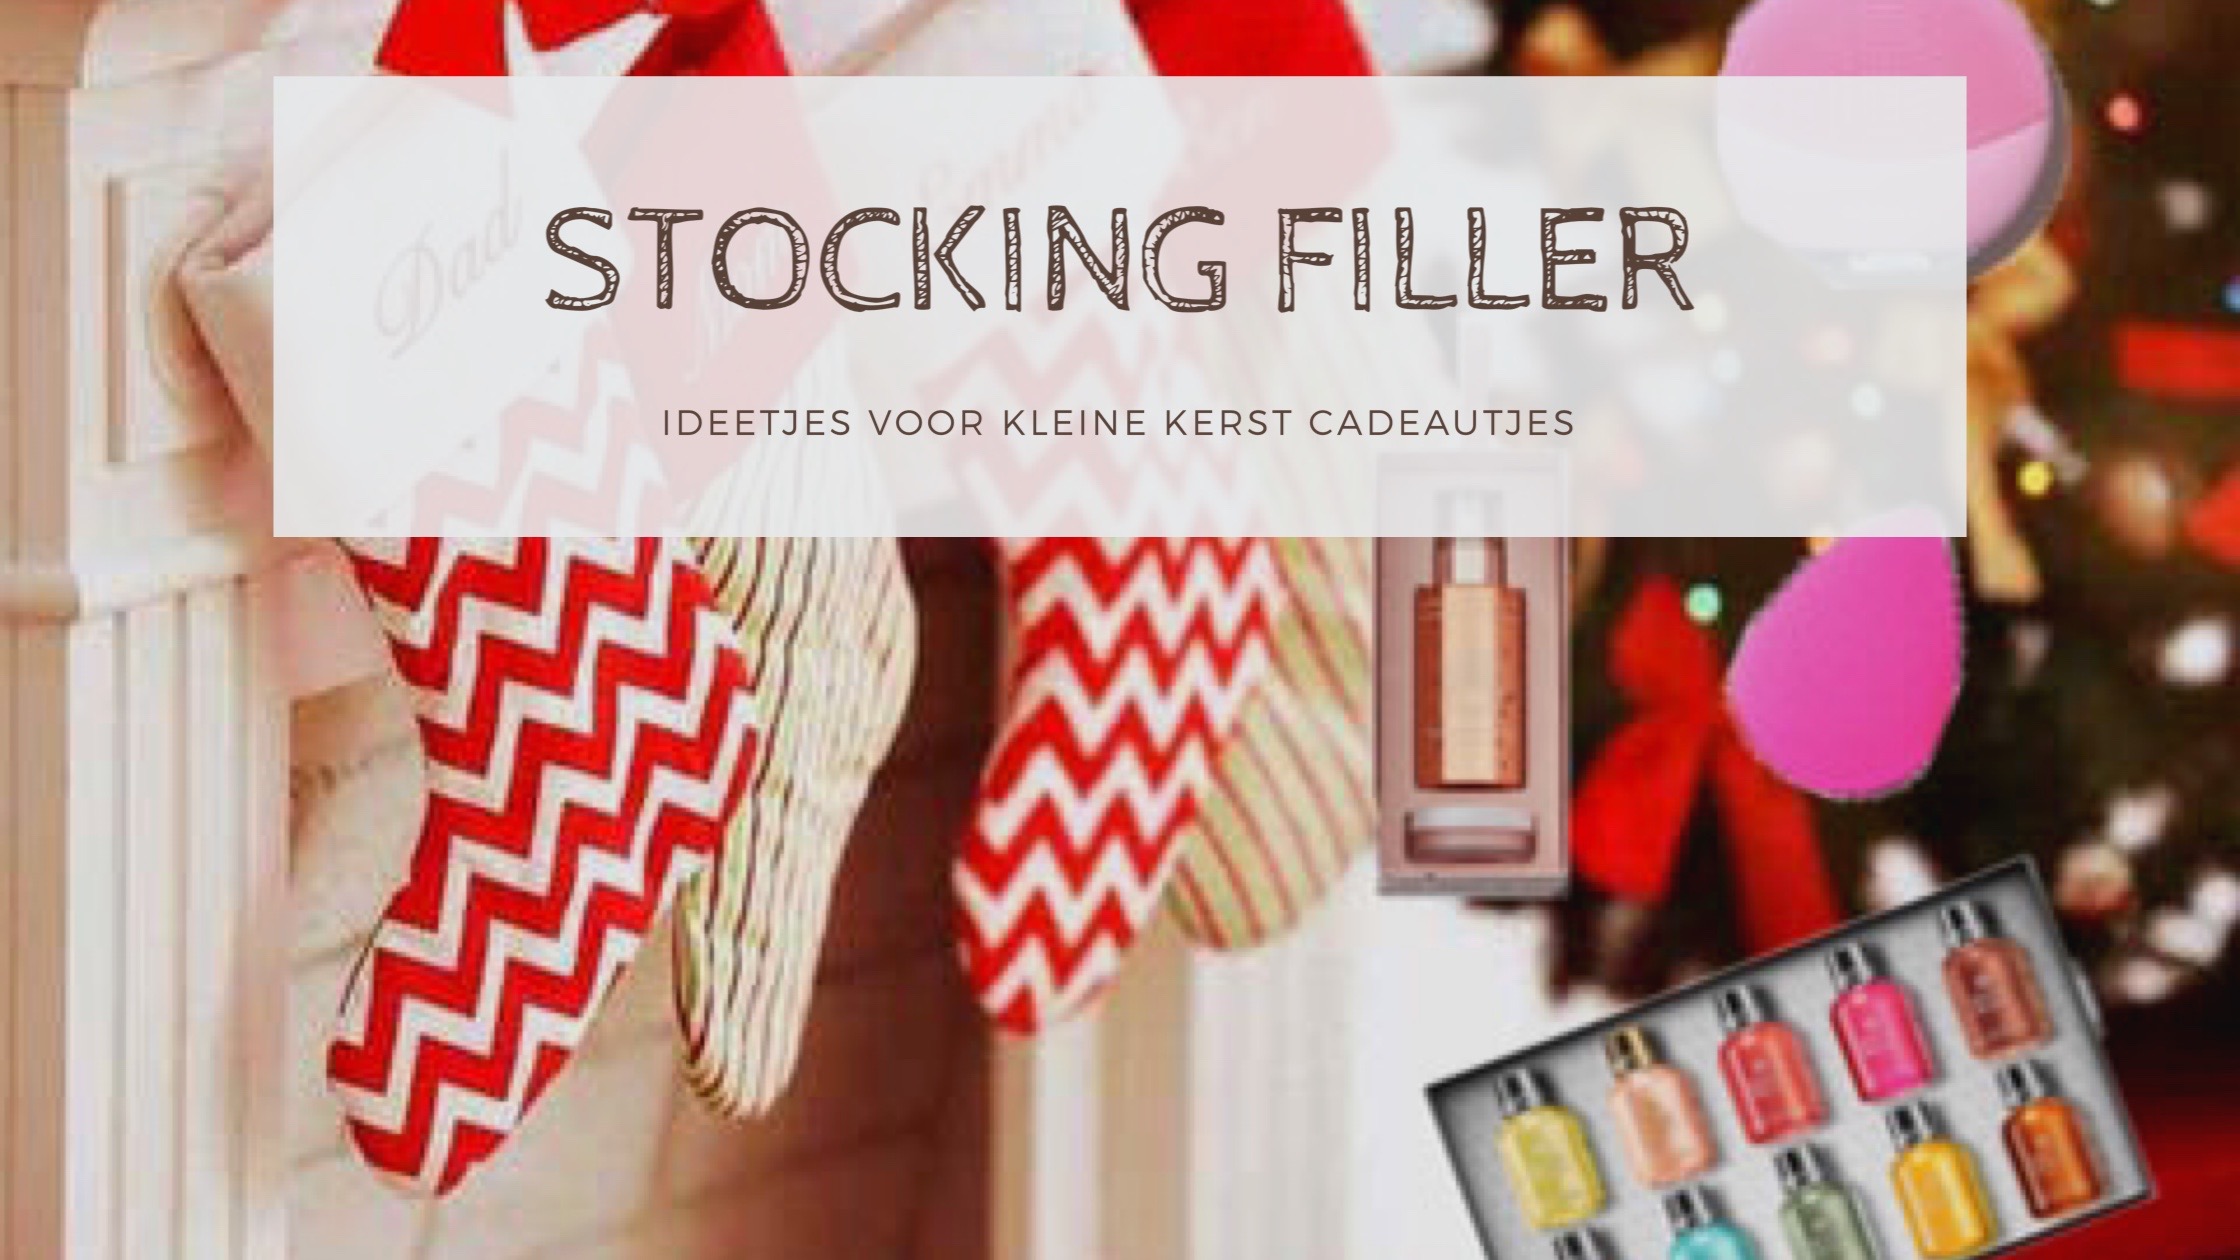 Stocking filler | Hier een paar ideetjes voor de kleine kerst cadeautjes trend